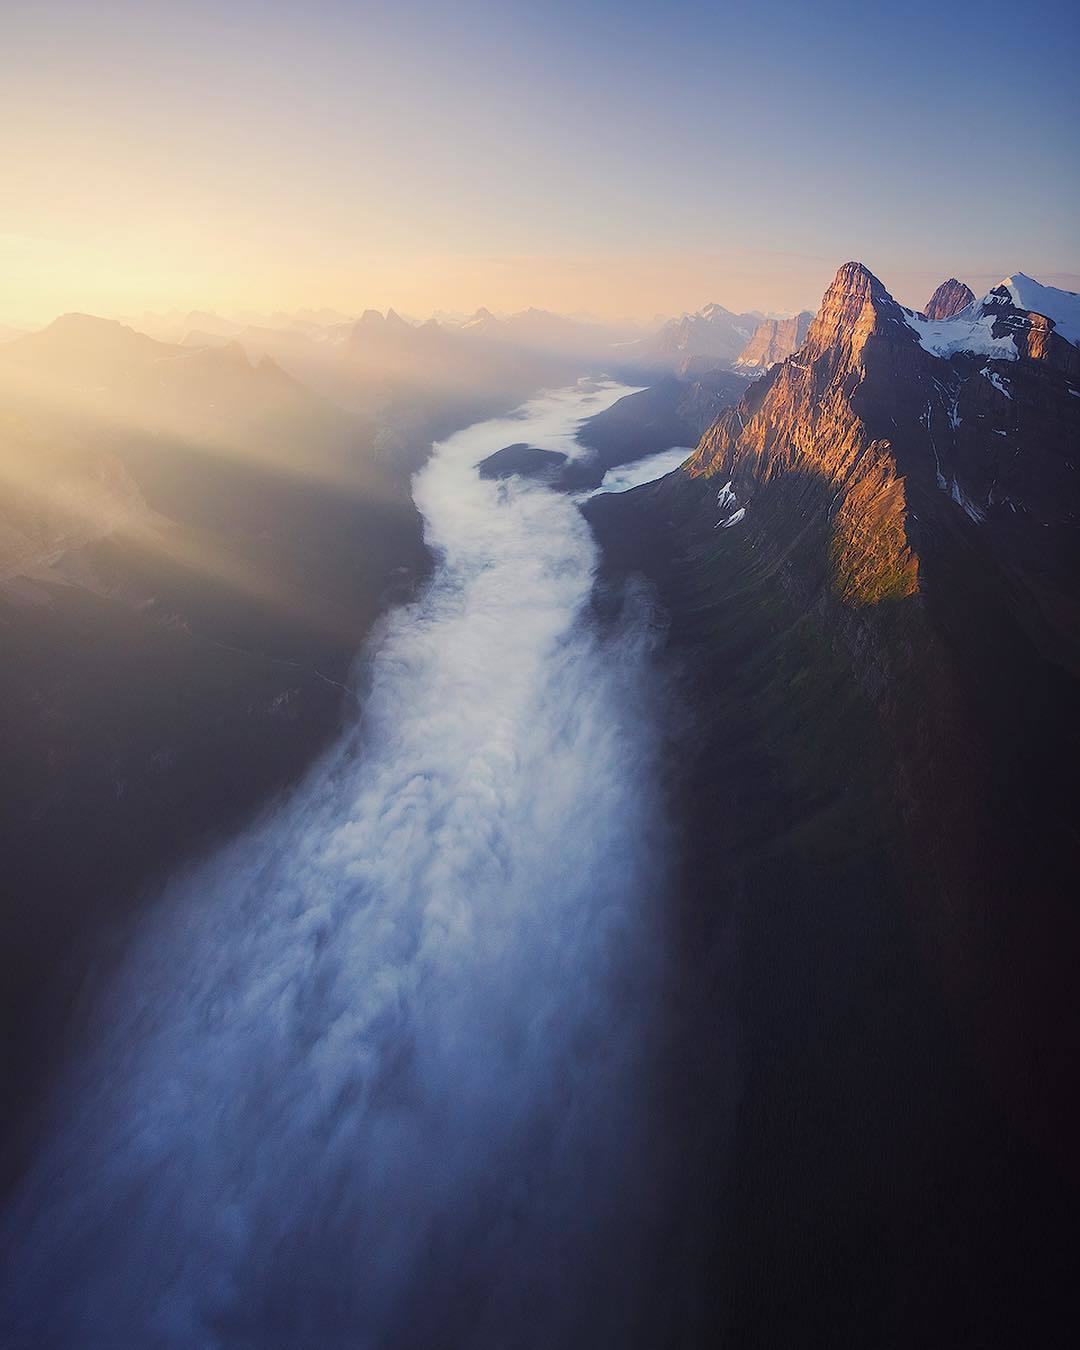  加拿大落基山脉的日出，来自摄影师Michael Shainblum。 